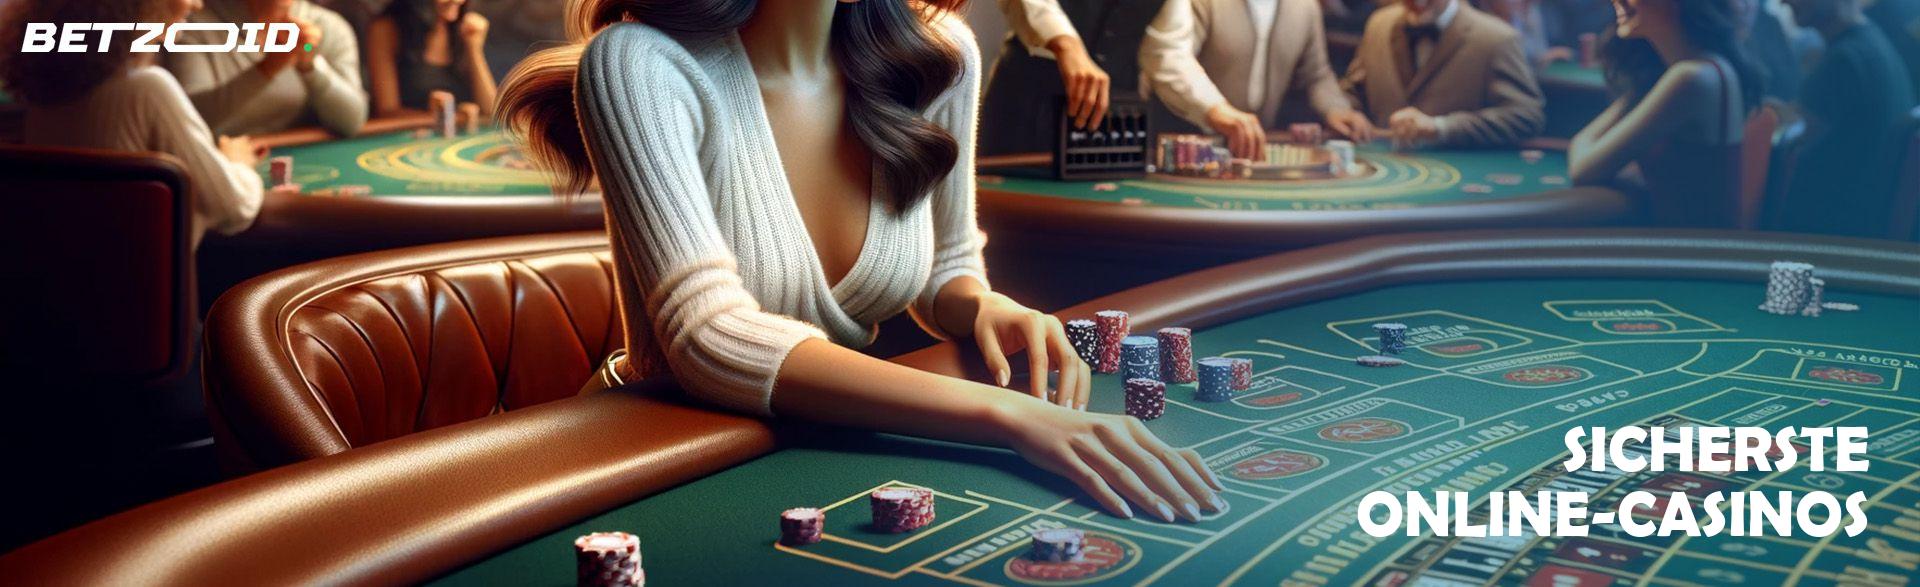 Sicherste Online-Casinos.